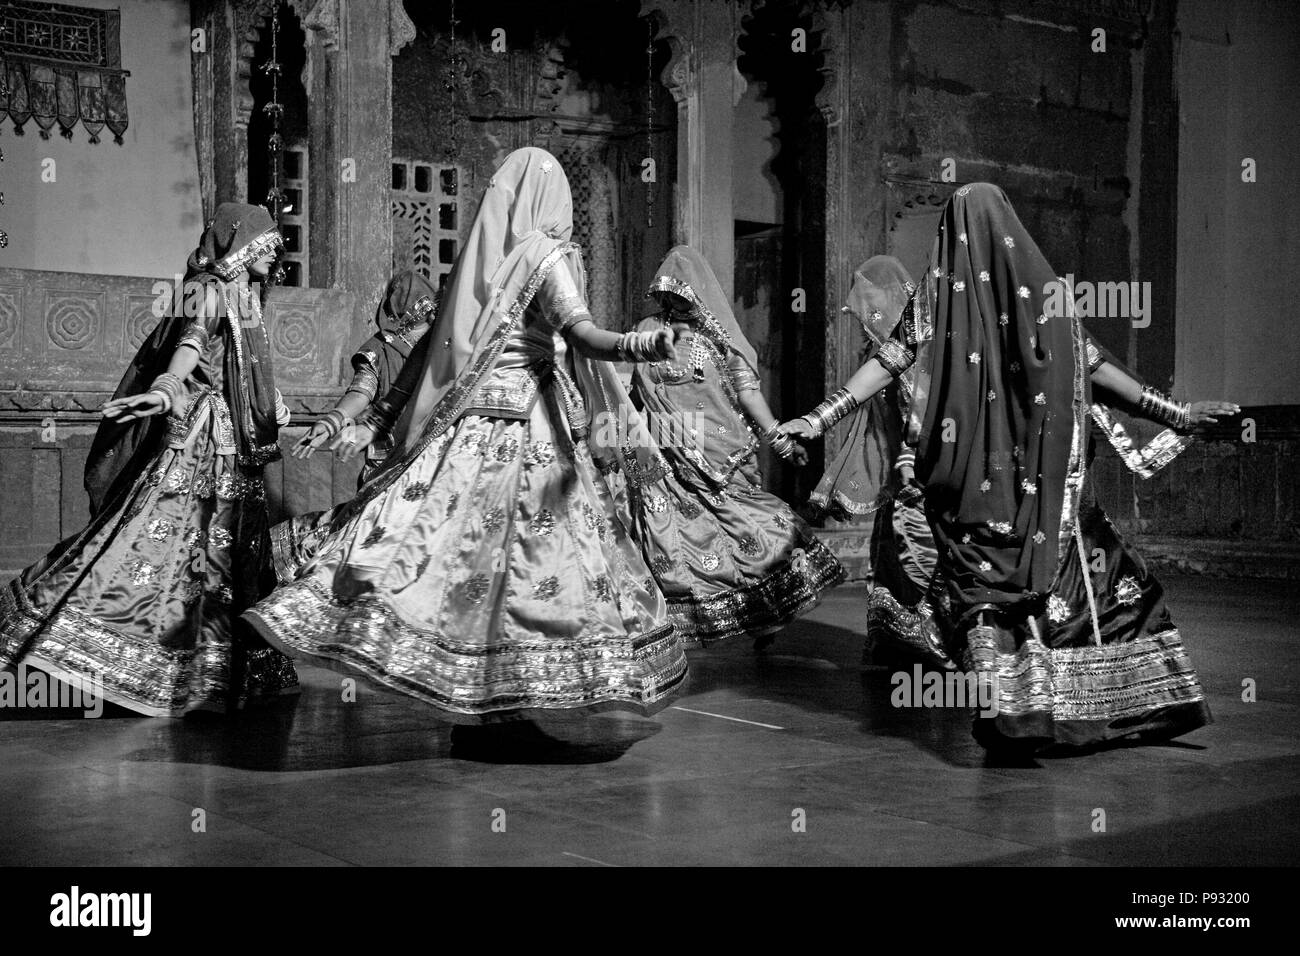 Les femmes du Rajasthan effectuer une danse traditionnelle dans leurs robes de soie colorés au MUSÉE BAGORE KI HAVELI Udaipur - Rajasthan, INDE Banque D'Images